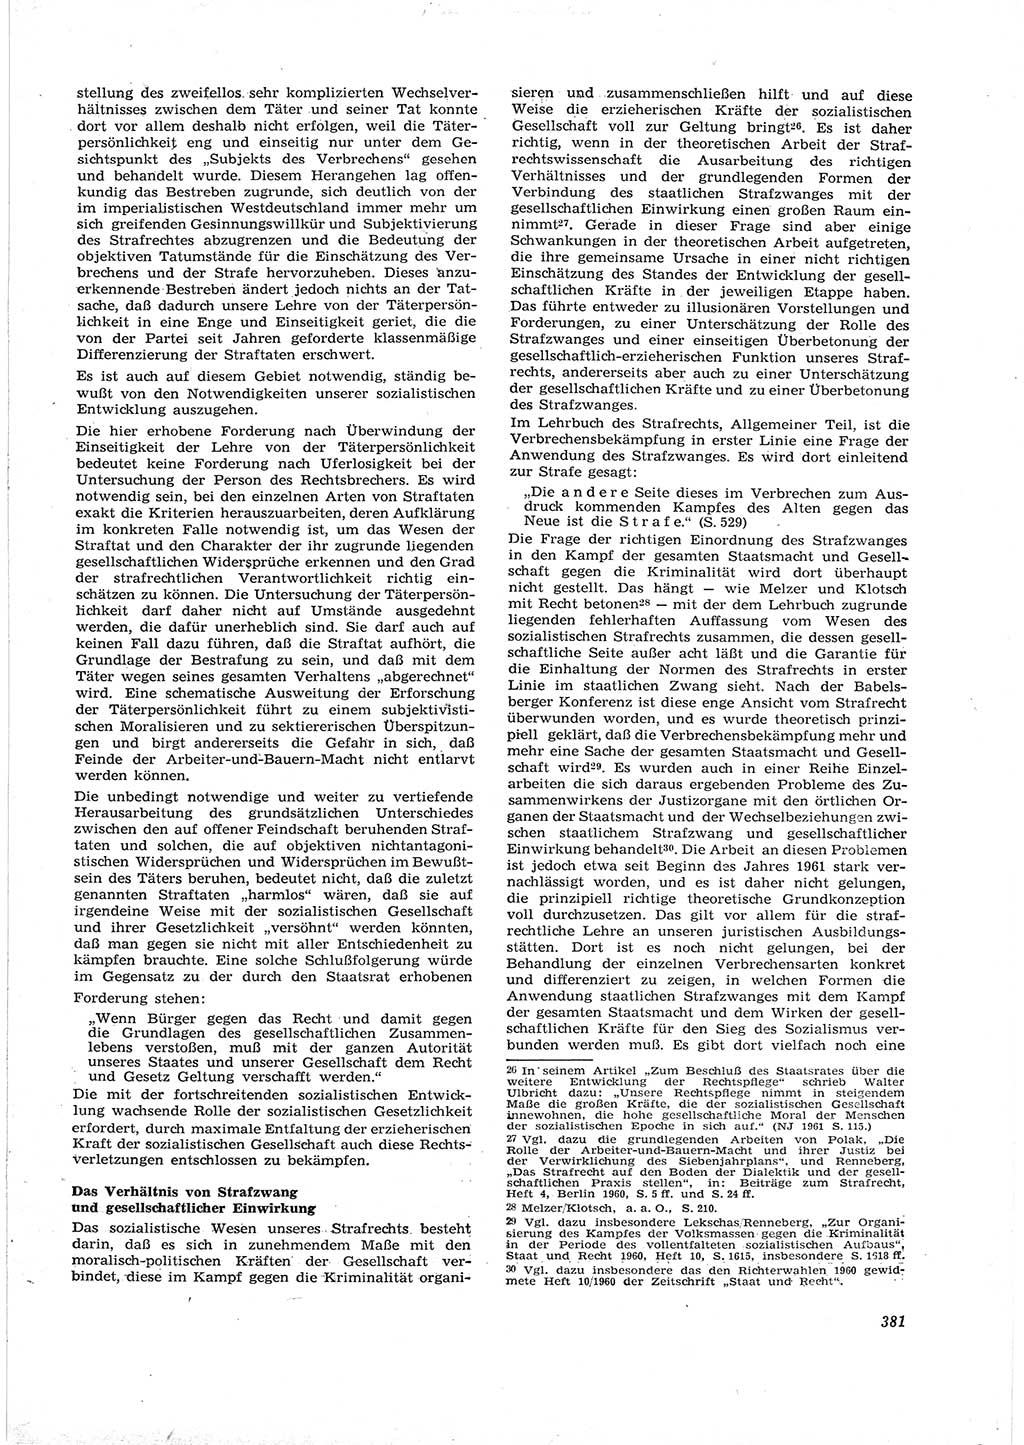 Neue Justiz (NJ), Zeitschrift für Recht und Rechtswissenschaft [Deutsche Demokratische Republik (DDR)], 16. Jahrgang 1962, Seite 381 (NJ DDR 1962, S. 381)